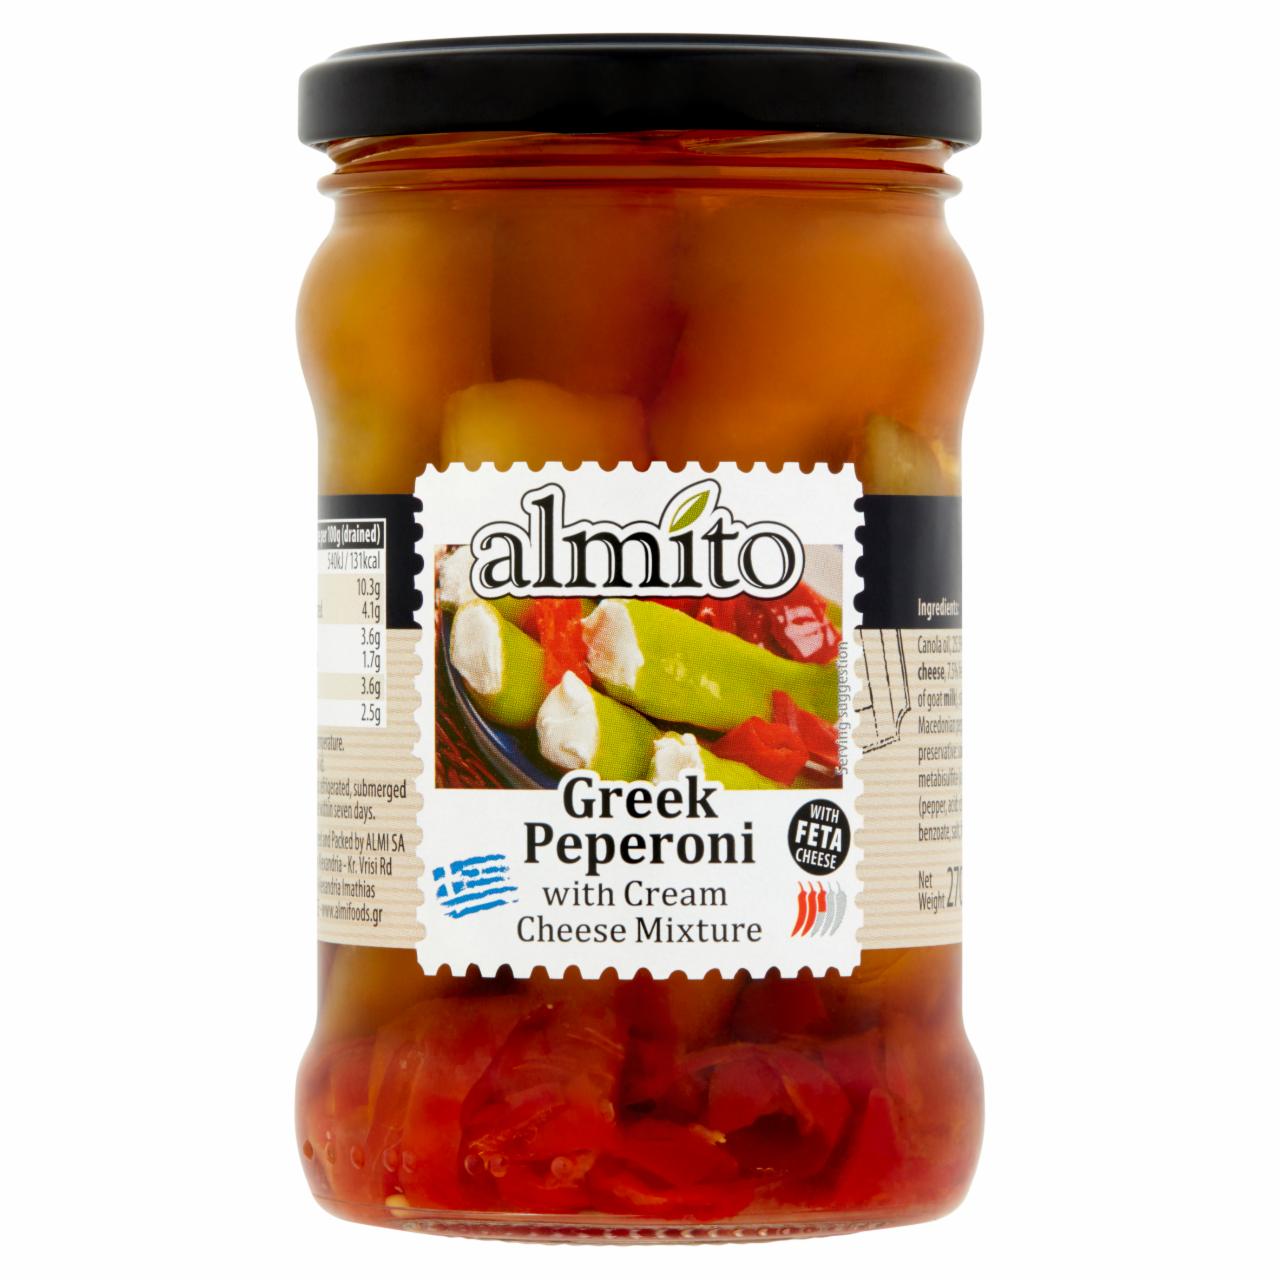 Képek - Almito krémsajt keverékkel töltött görög pepperoni canola olajban 270 g